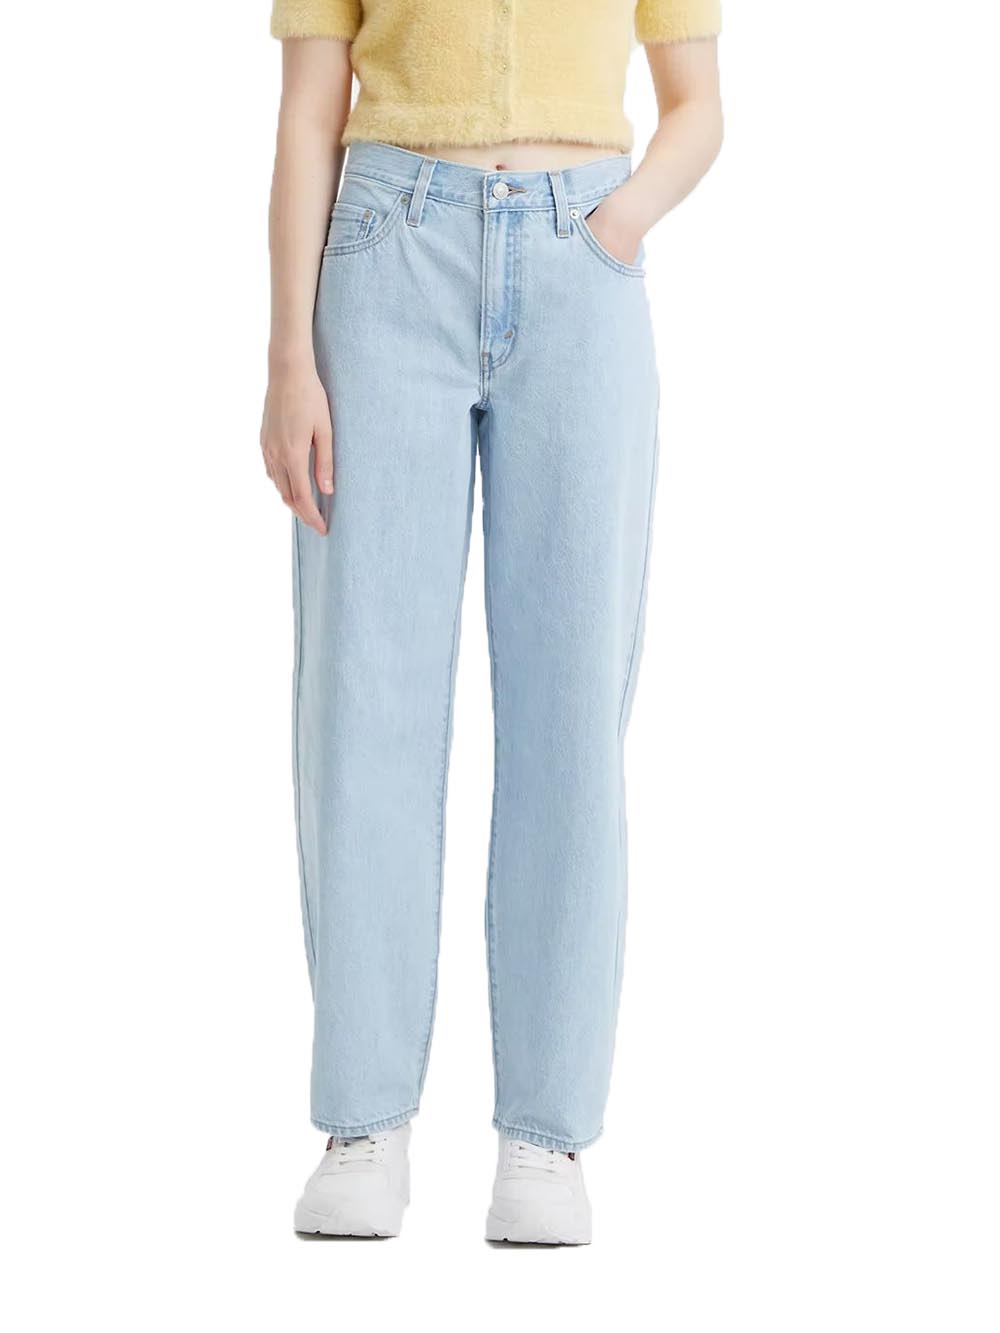 Levi's Jeans Donna Chiaro